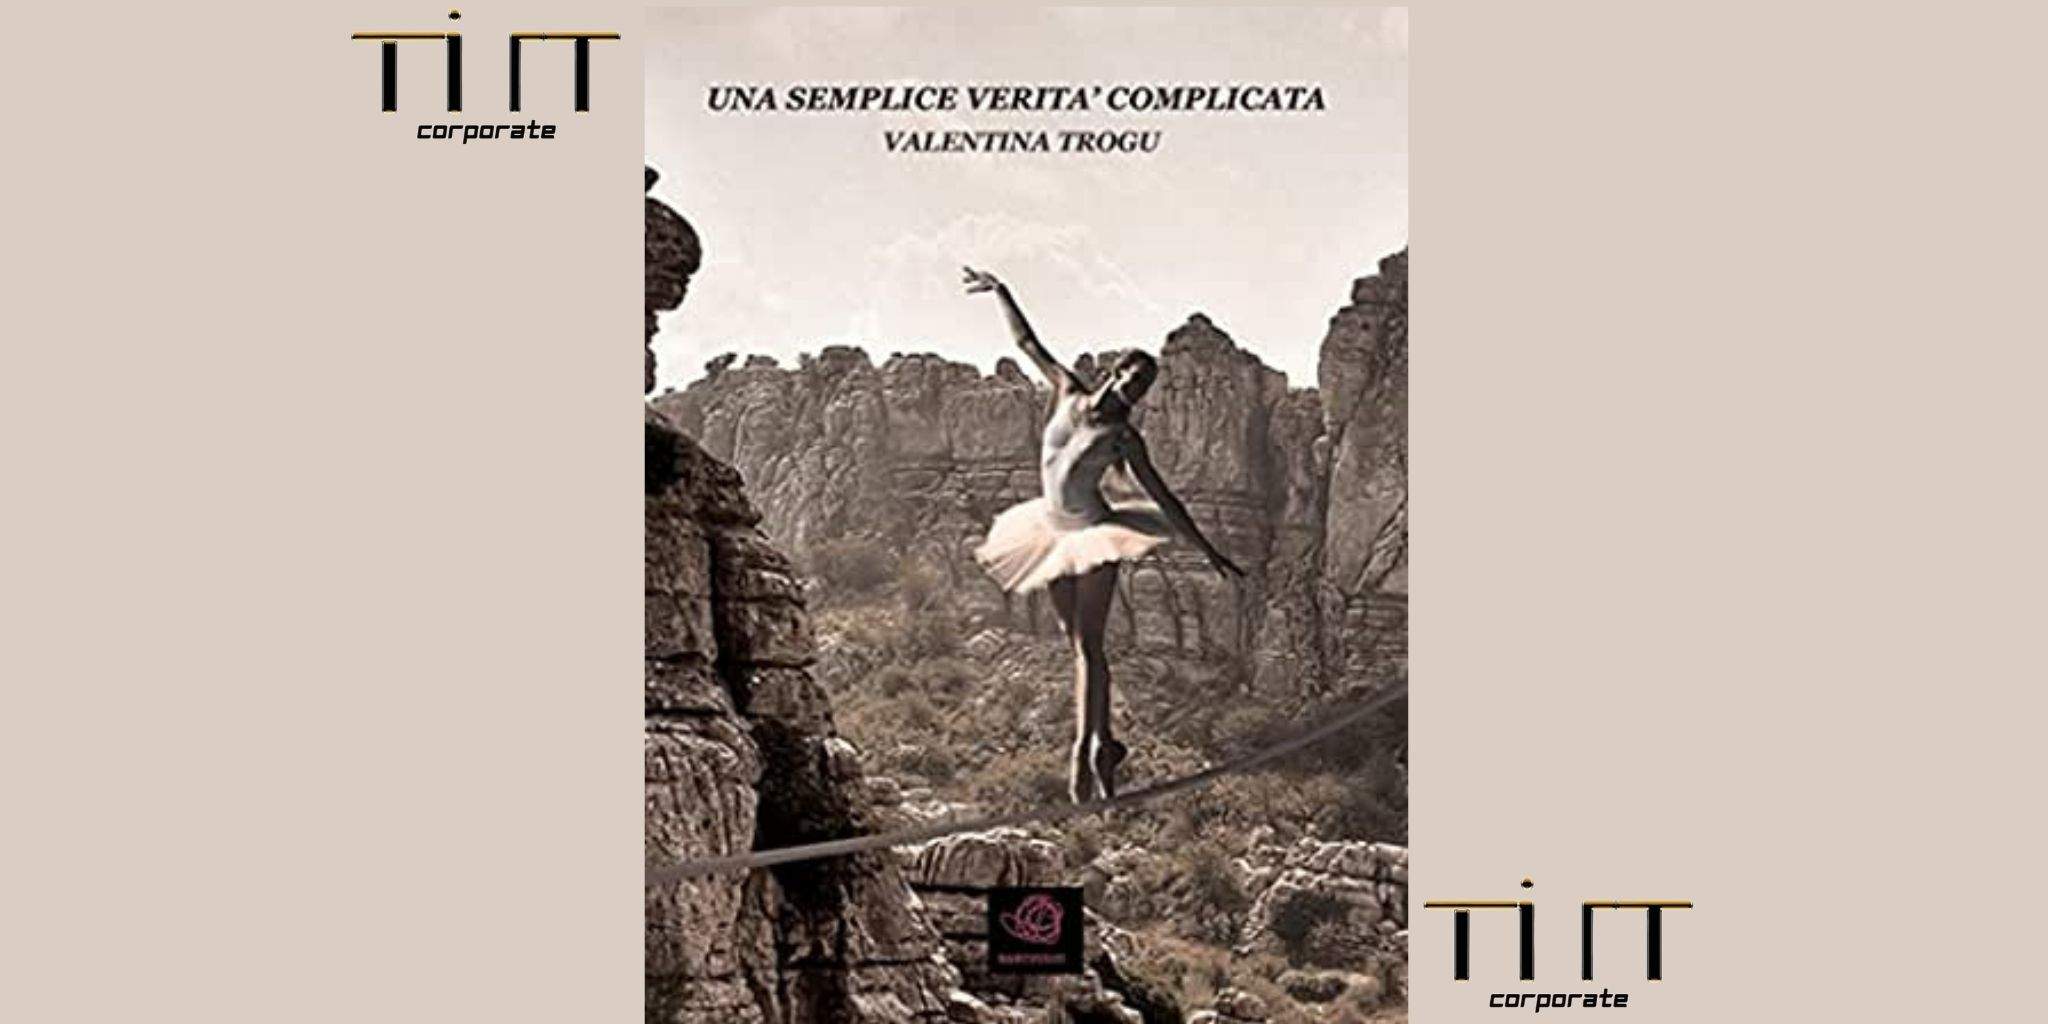 Tilt Corporate acquisisce i diritti cinematografici del libro "Una semplice veritá complicata" di Valentina Trogu